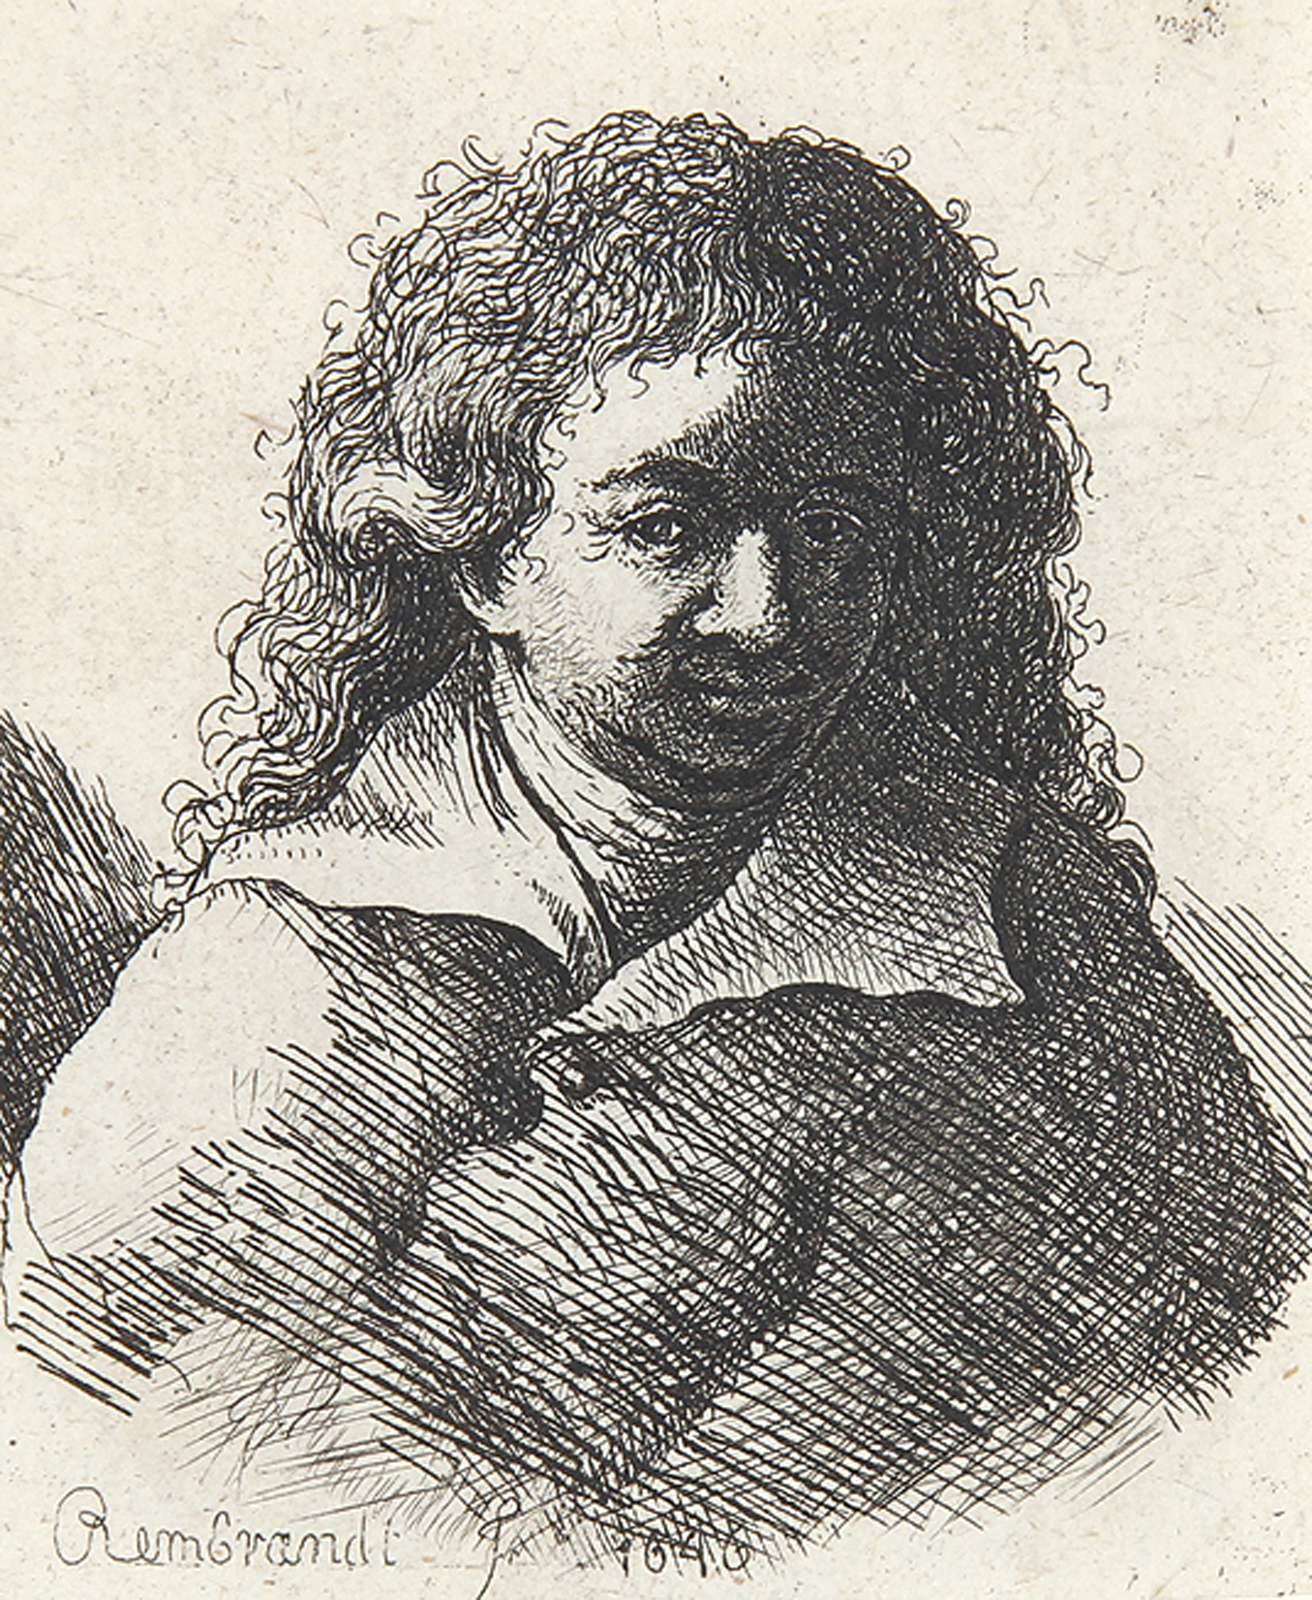 Brustbild eines jungen Mannes mit lockigem Haar.